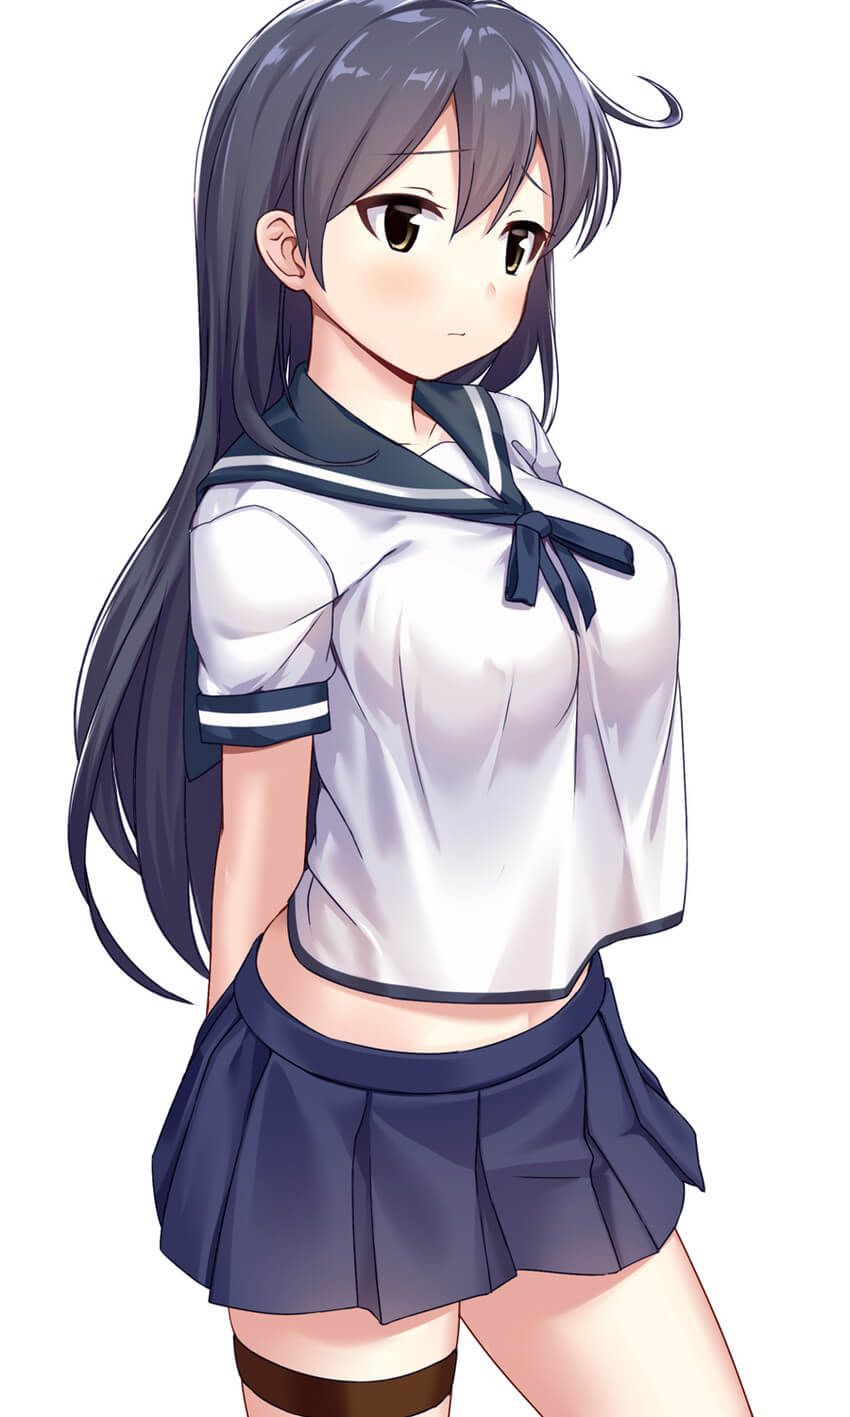 【2D】Erotic cute image of schoolgirl wearing school uniform (blazer sailor) 23